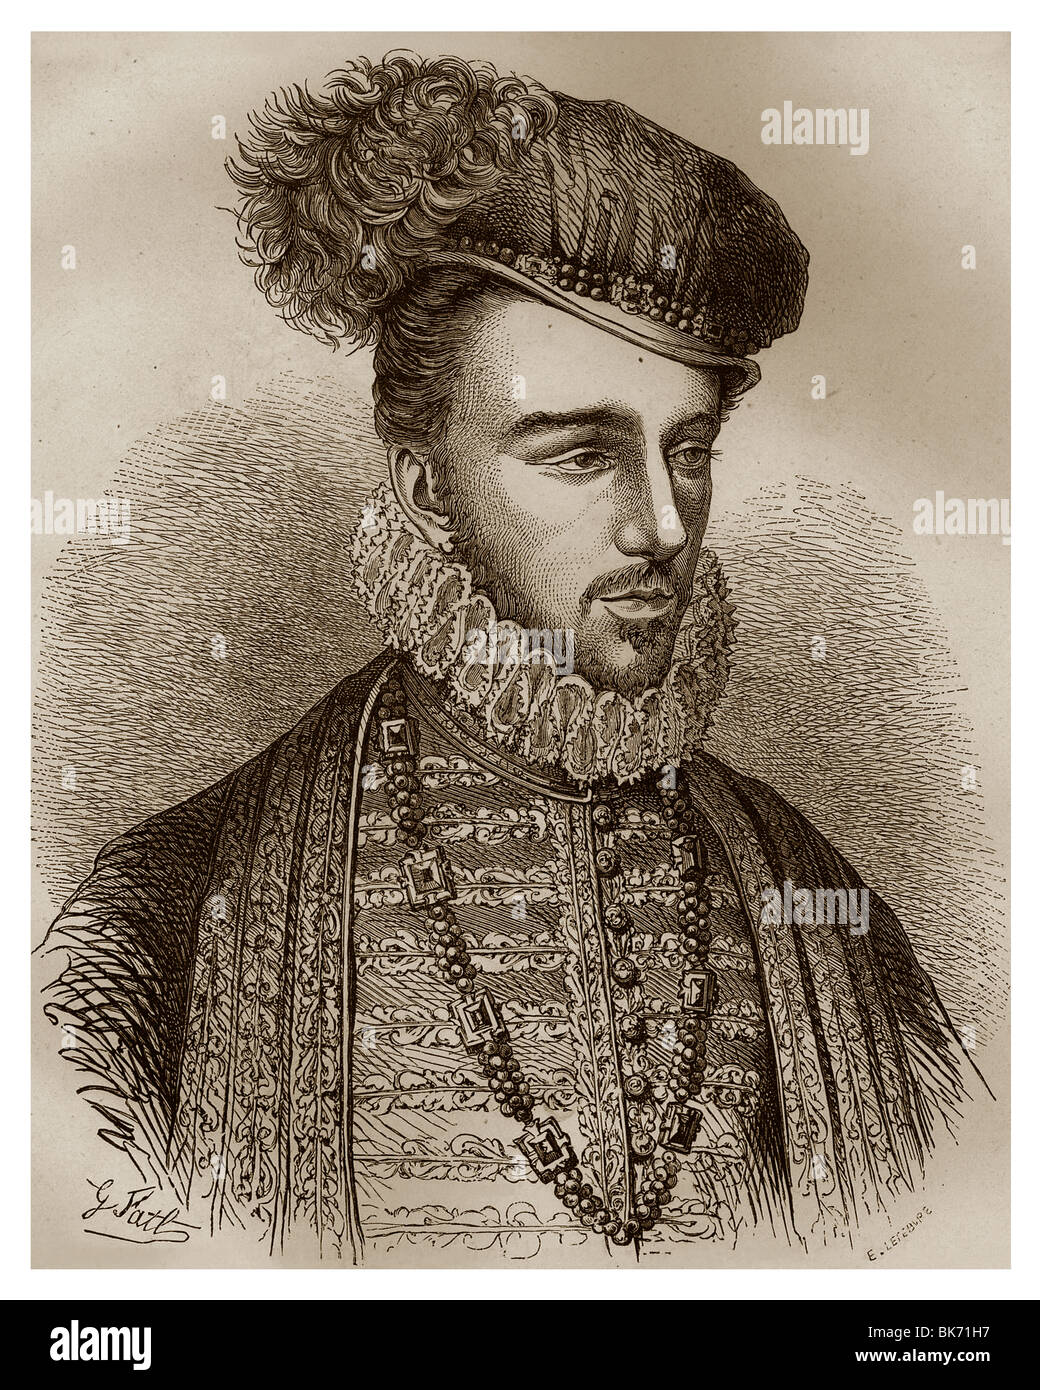 Francis, Herzog von Alençon und von Anjou (1555-1584): König von Frankreich-Bruder, der an der Spitze der Parti des unzufriedenen war. Stockfoto